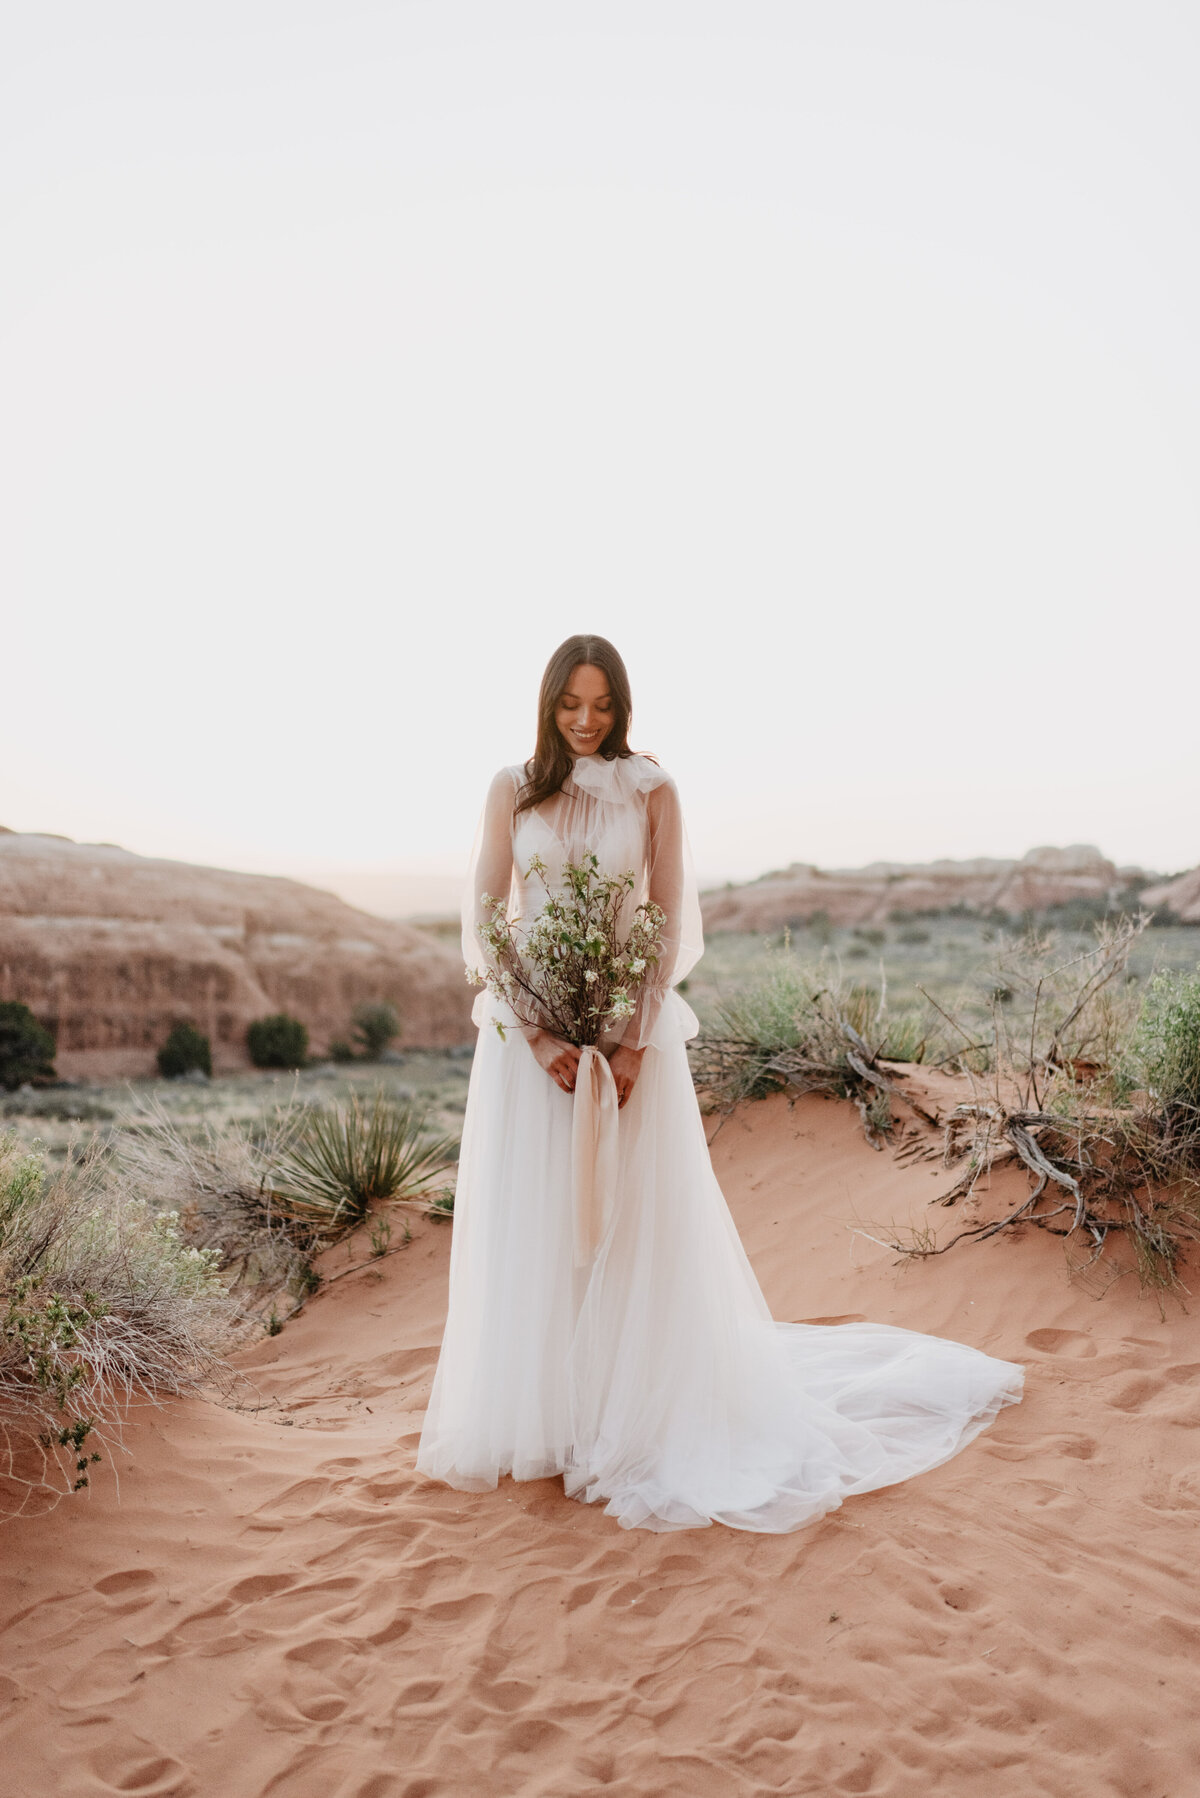 Utah elopement photographer captures bride looking at bouquet